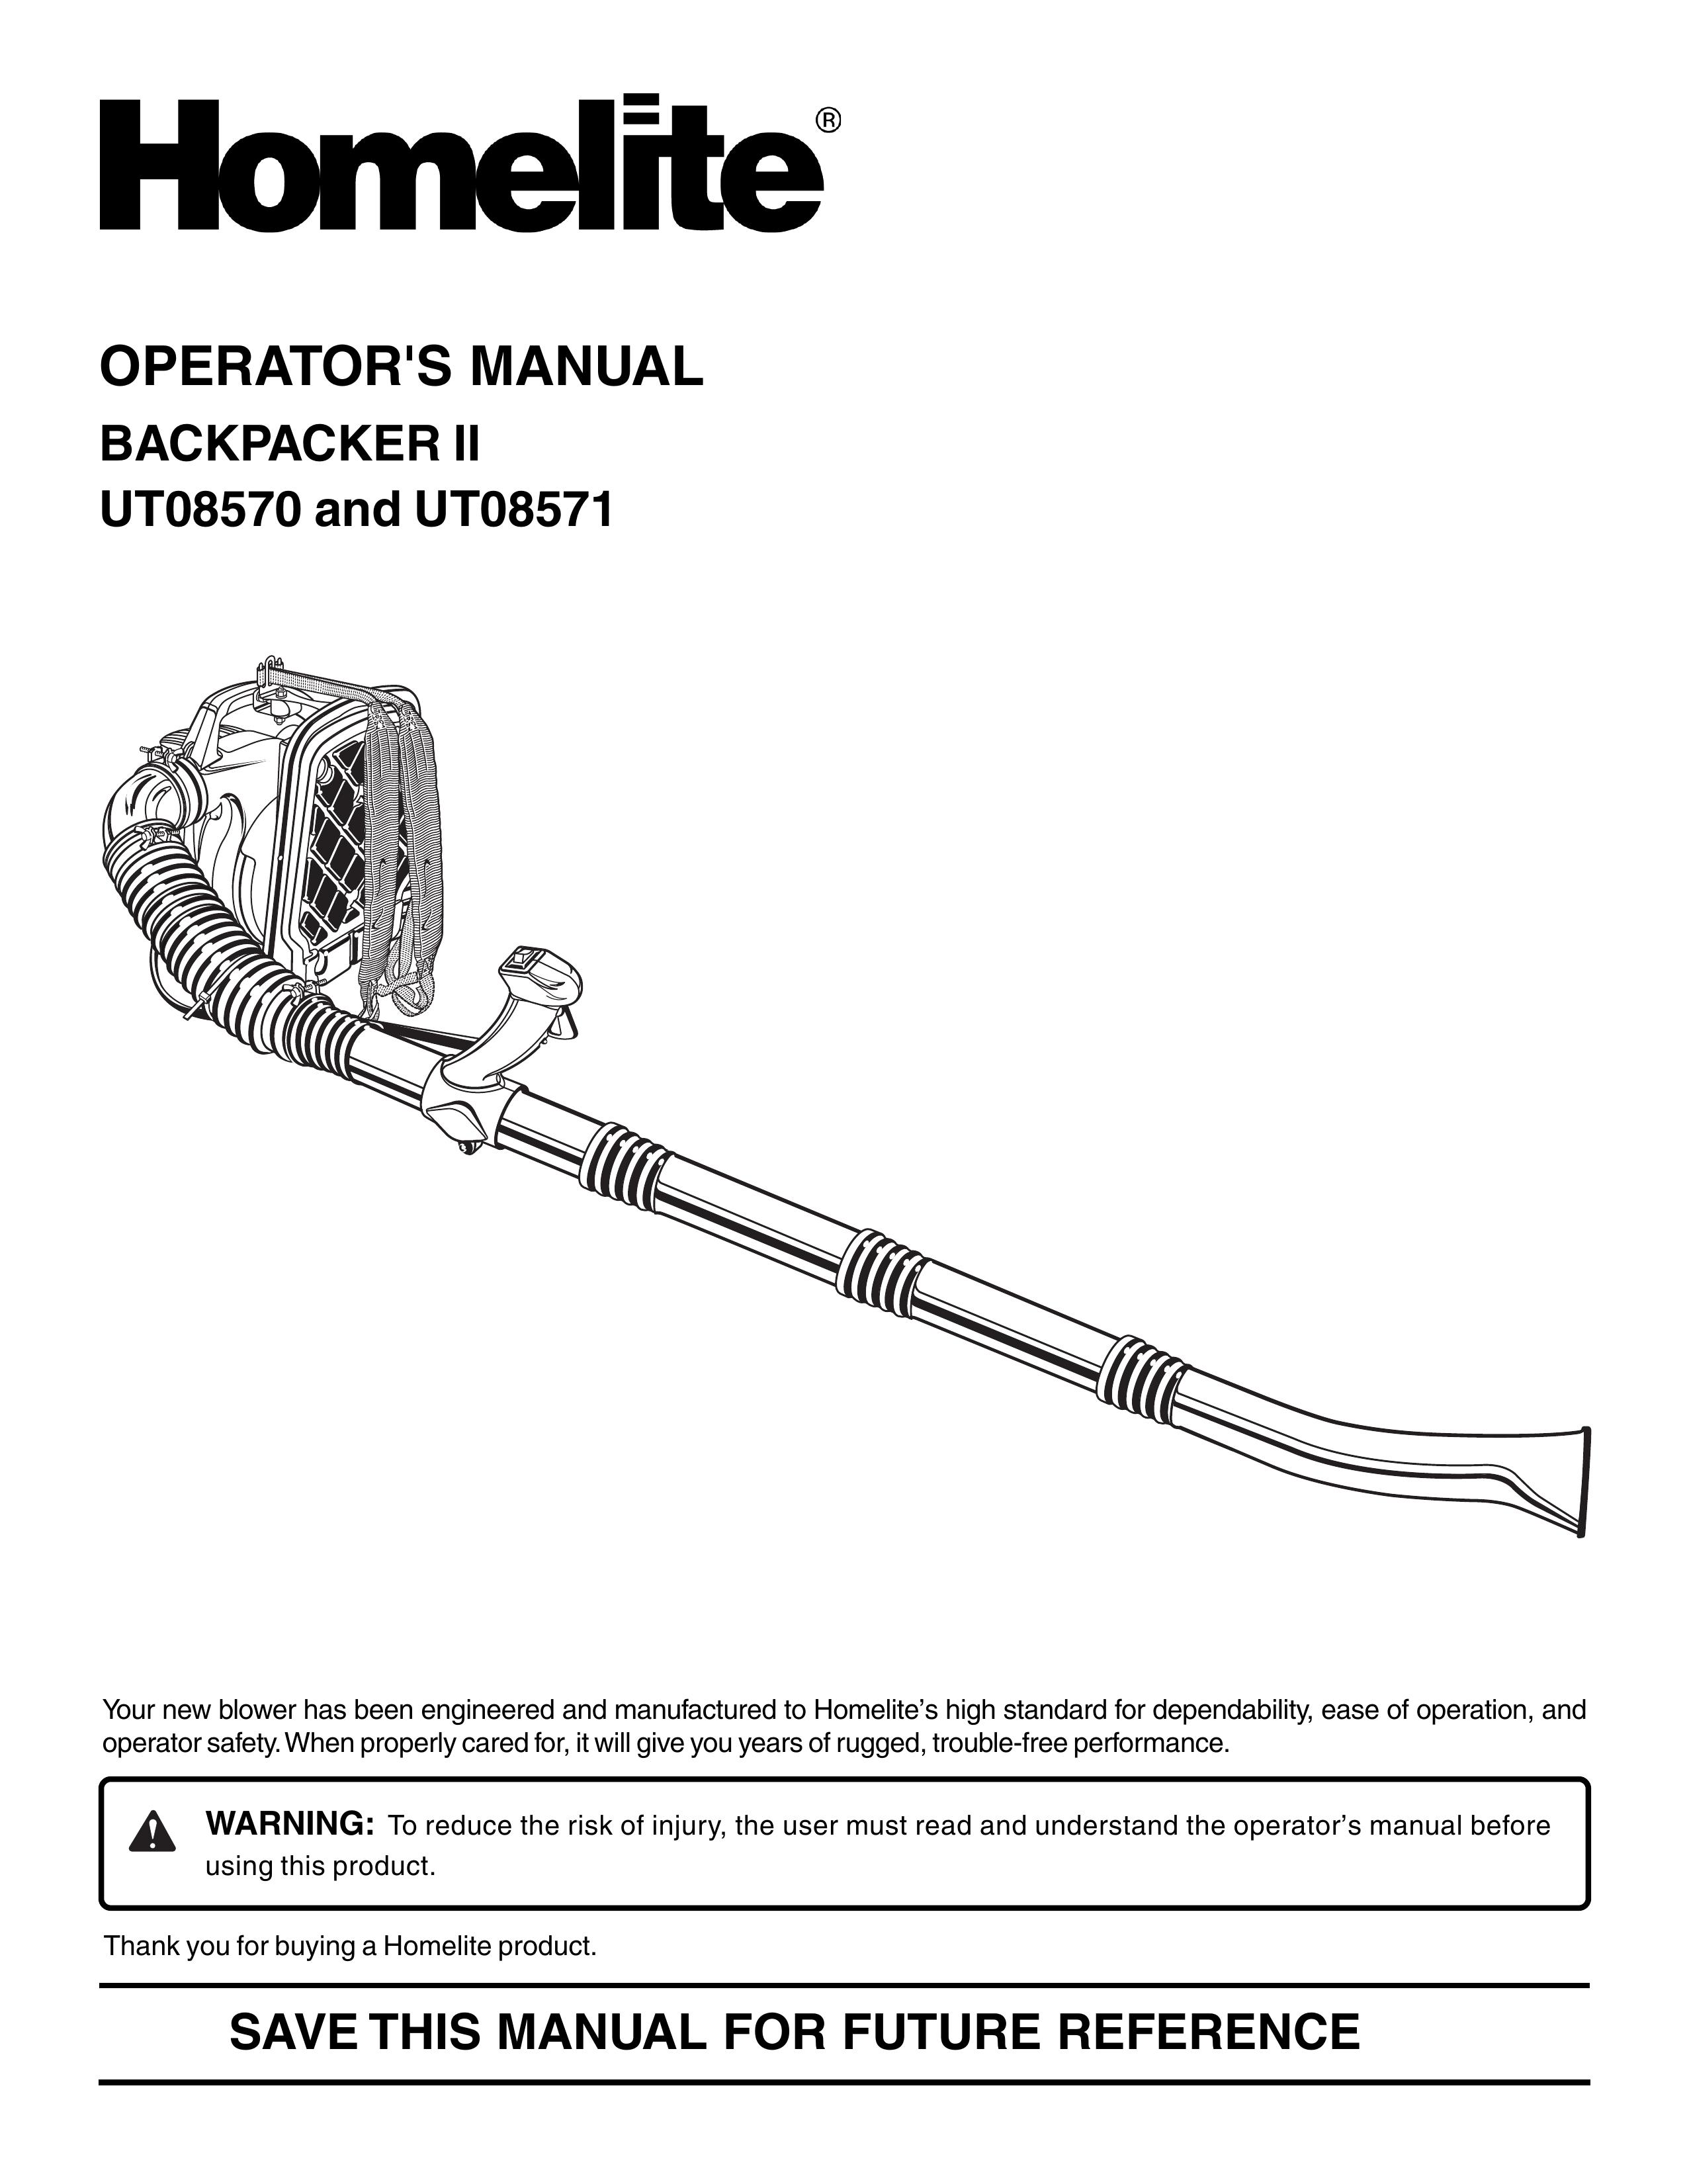 Homelite UT08571 Blower User Manual